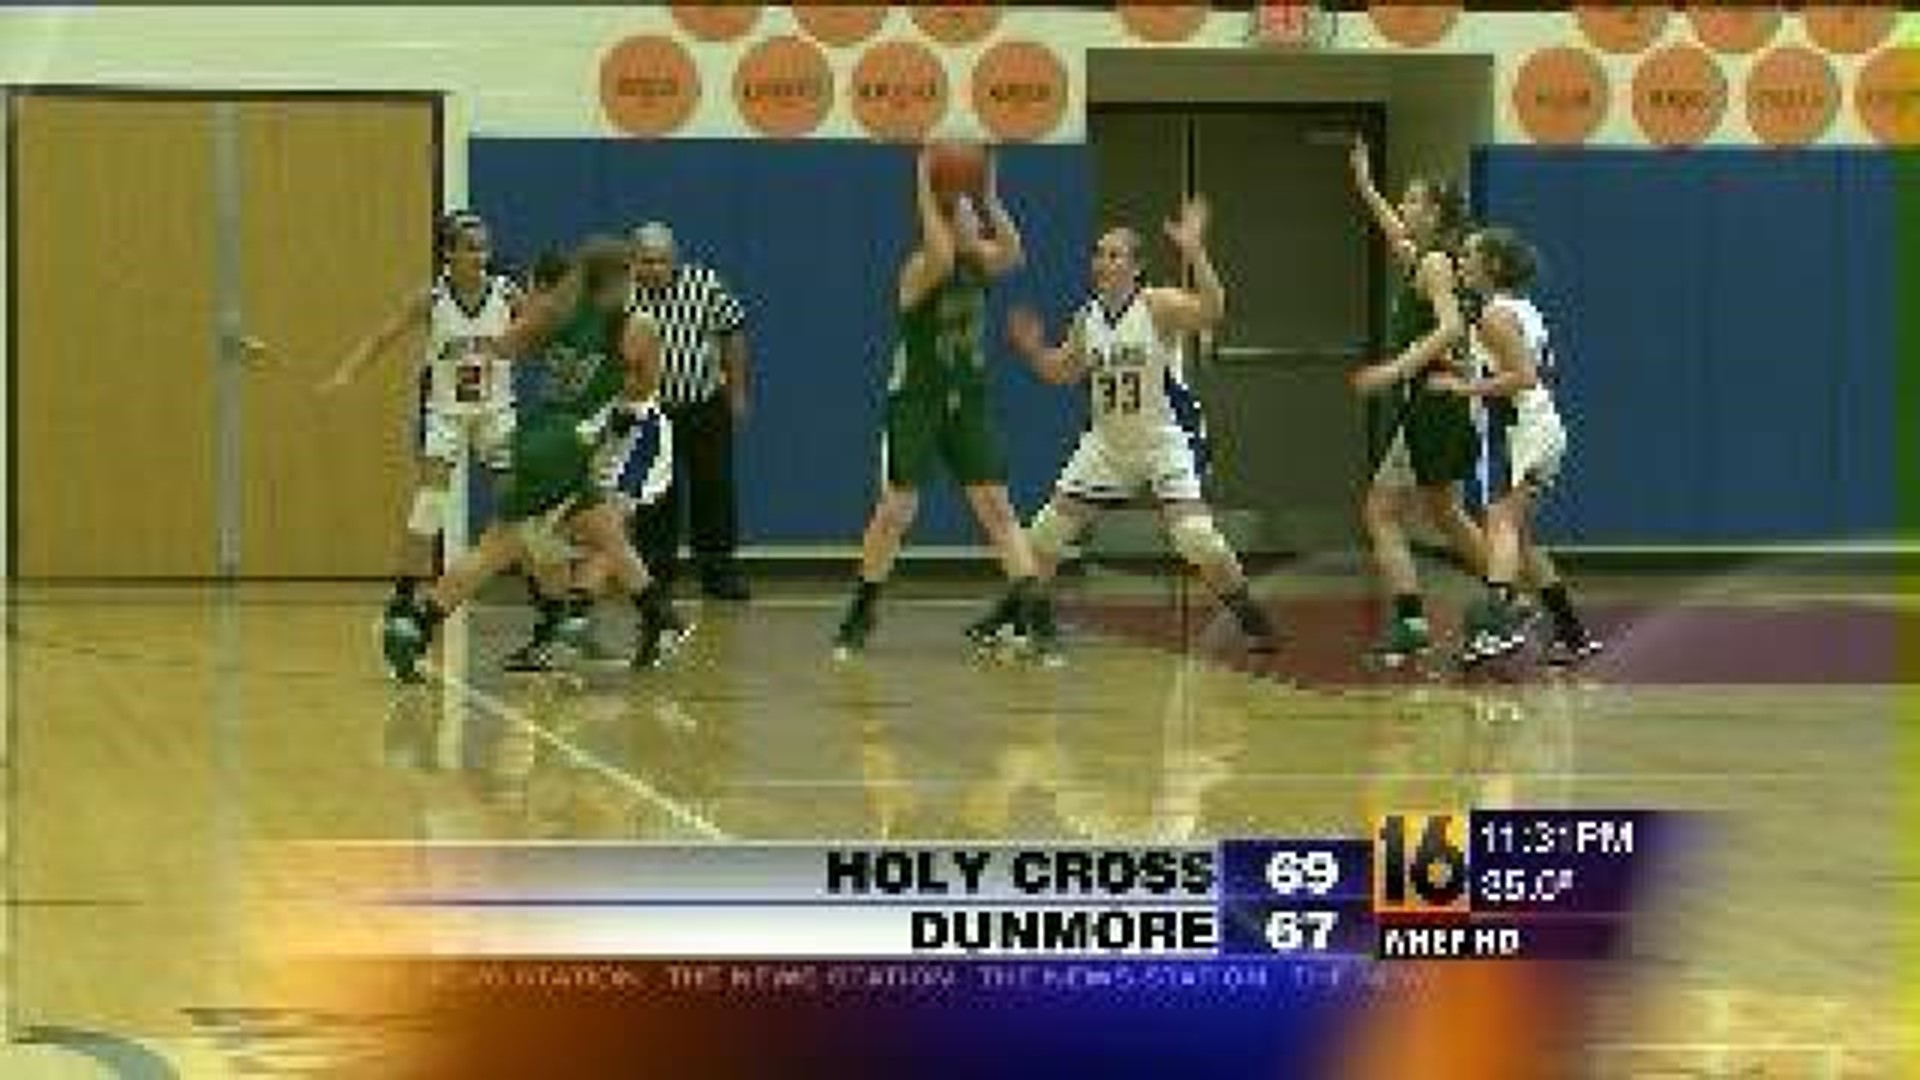 Holy Cross vs Dunmore